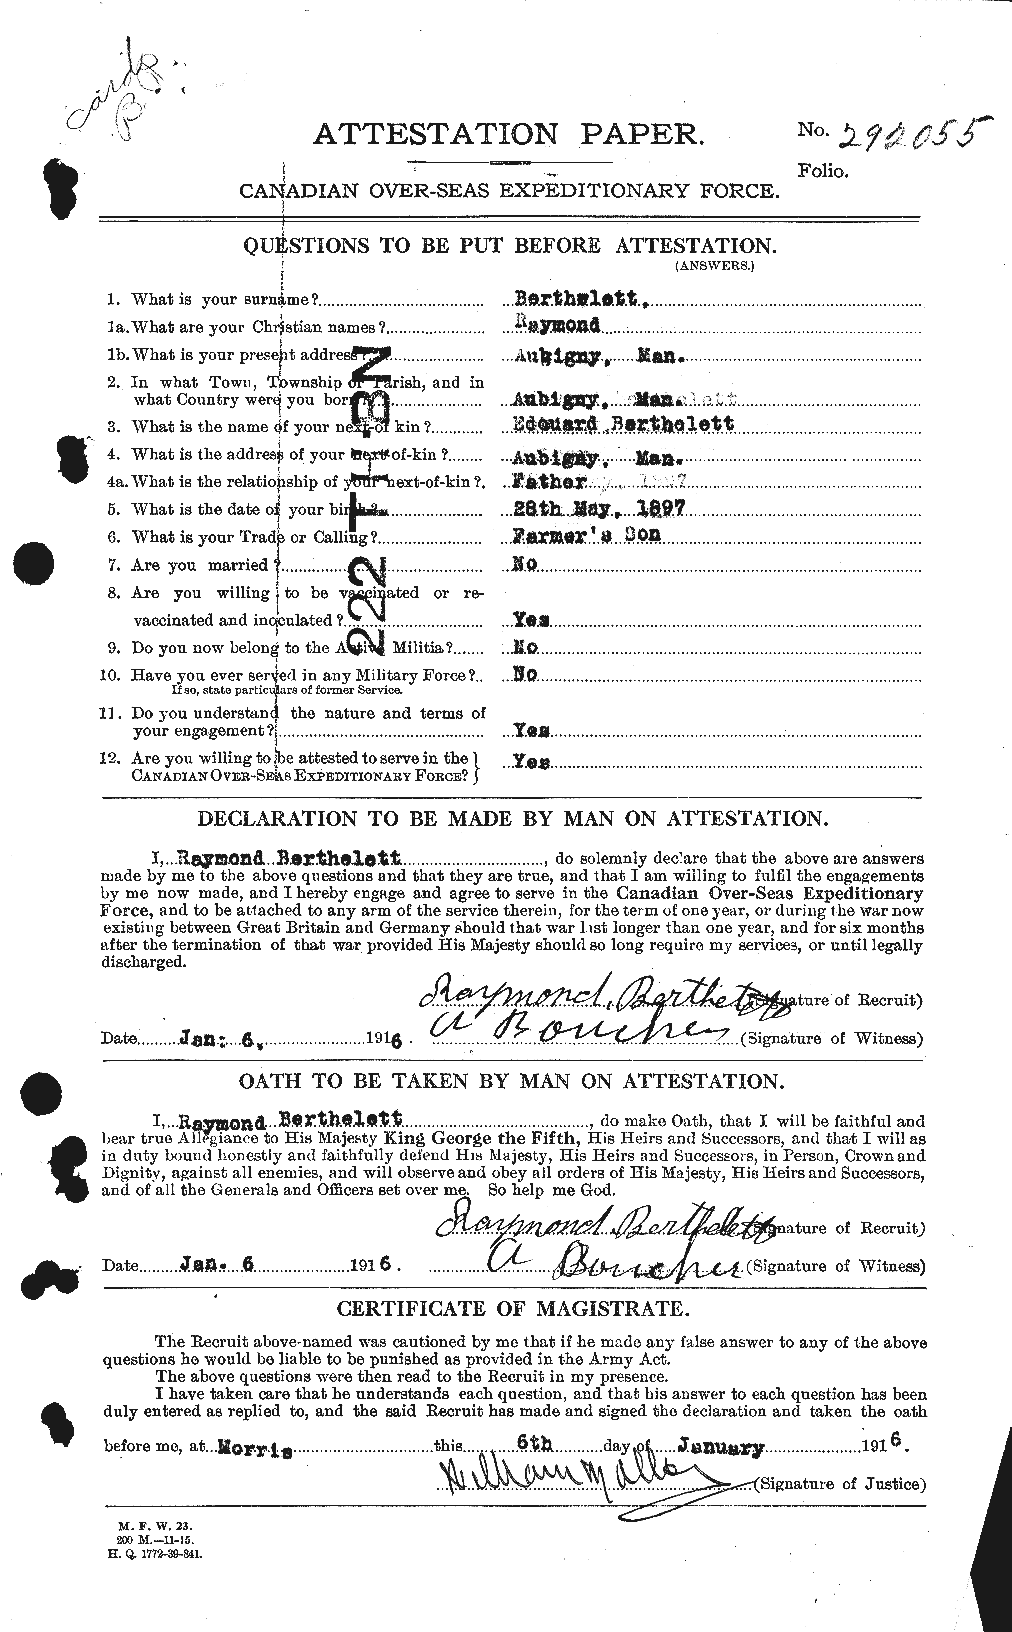 Dossiers du Personnel de la Première Guerre mondiale - CEC 235580a